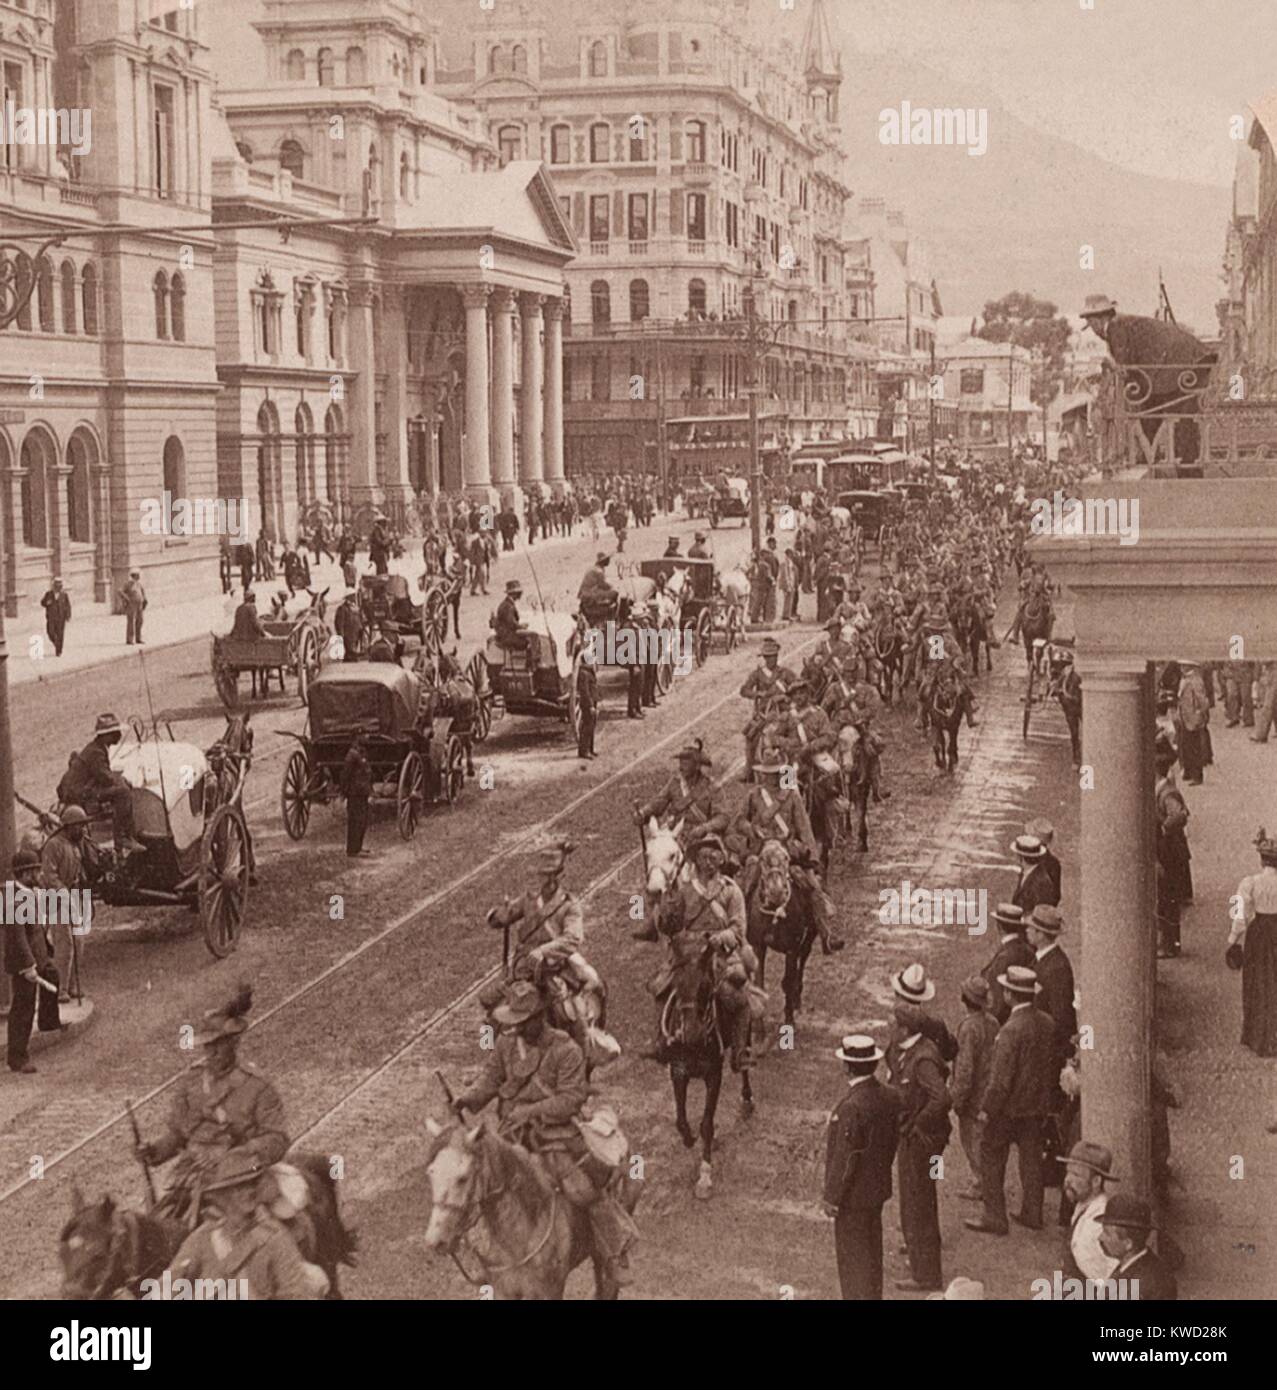 Imperial Light Horse reggimento marciando verso il basso Adderly San a Cape Town, Feb 26, 1900. I rinforzi sono stati lungo il tragitto per il fronte di battaglia durante la guerra boera, Feb 26, 1900 (BSLOC 2017 20 49) Foto Stock